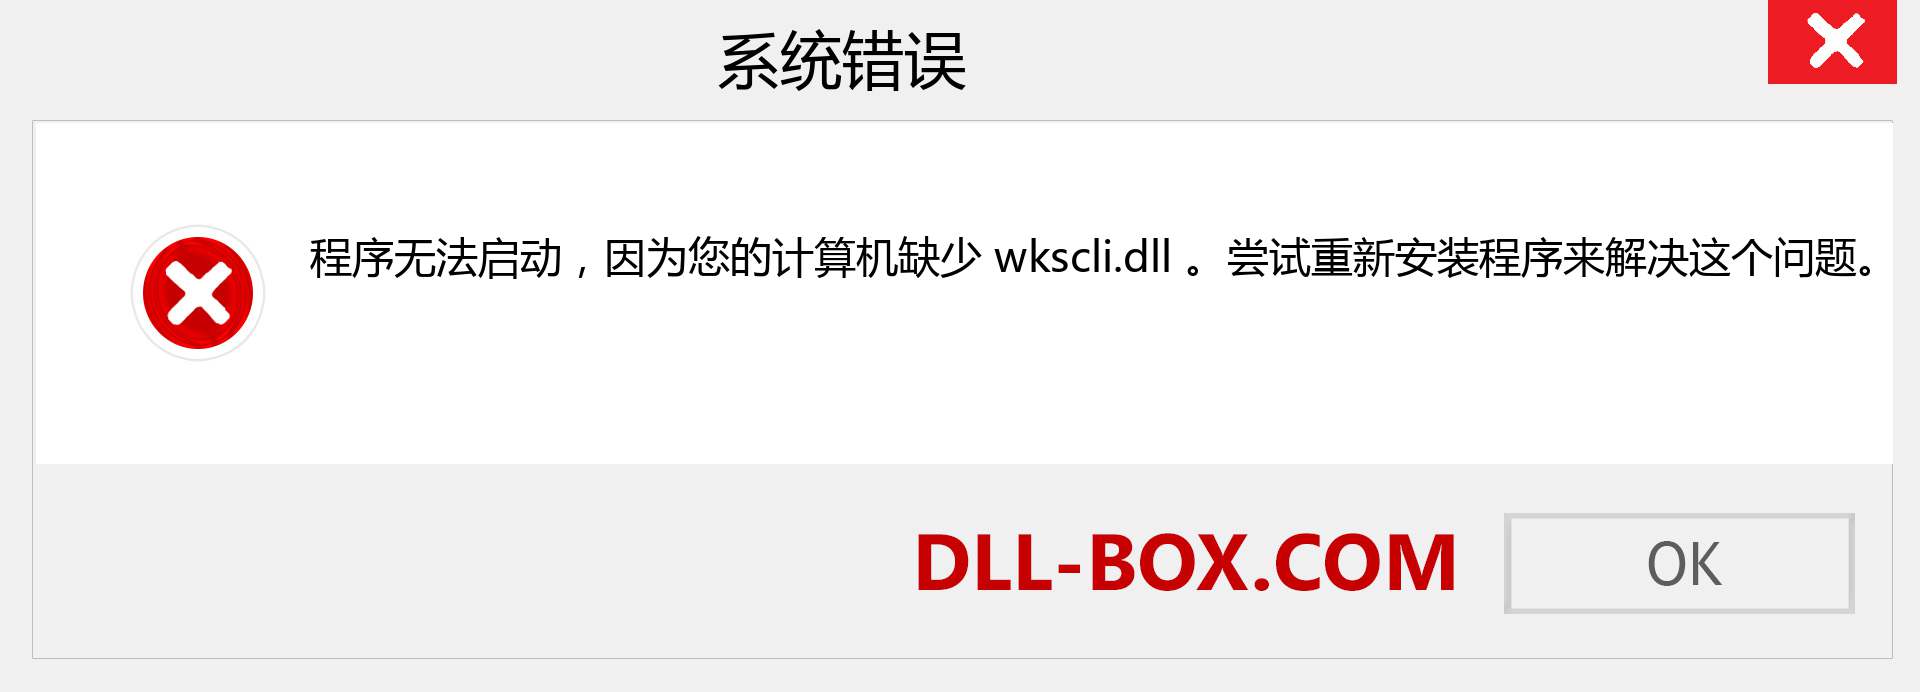 wkscli.dll 文件丢失？。 适用于 Windows 7、8、10 的下载 - 修复 Windows、照片、图像上的 wkscli dll 丢失错误